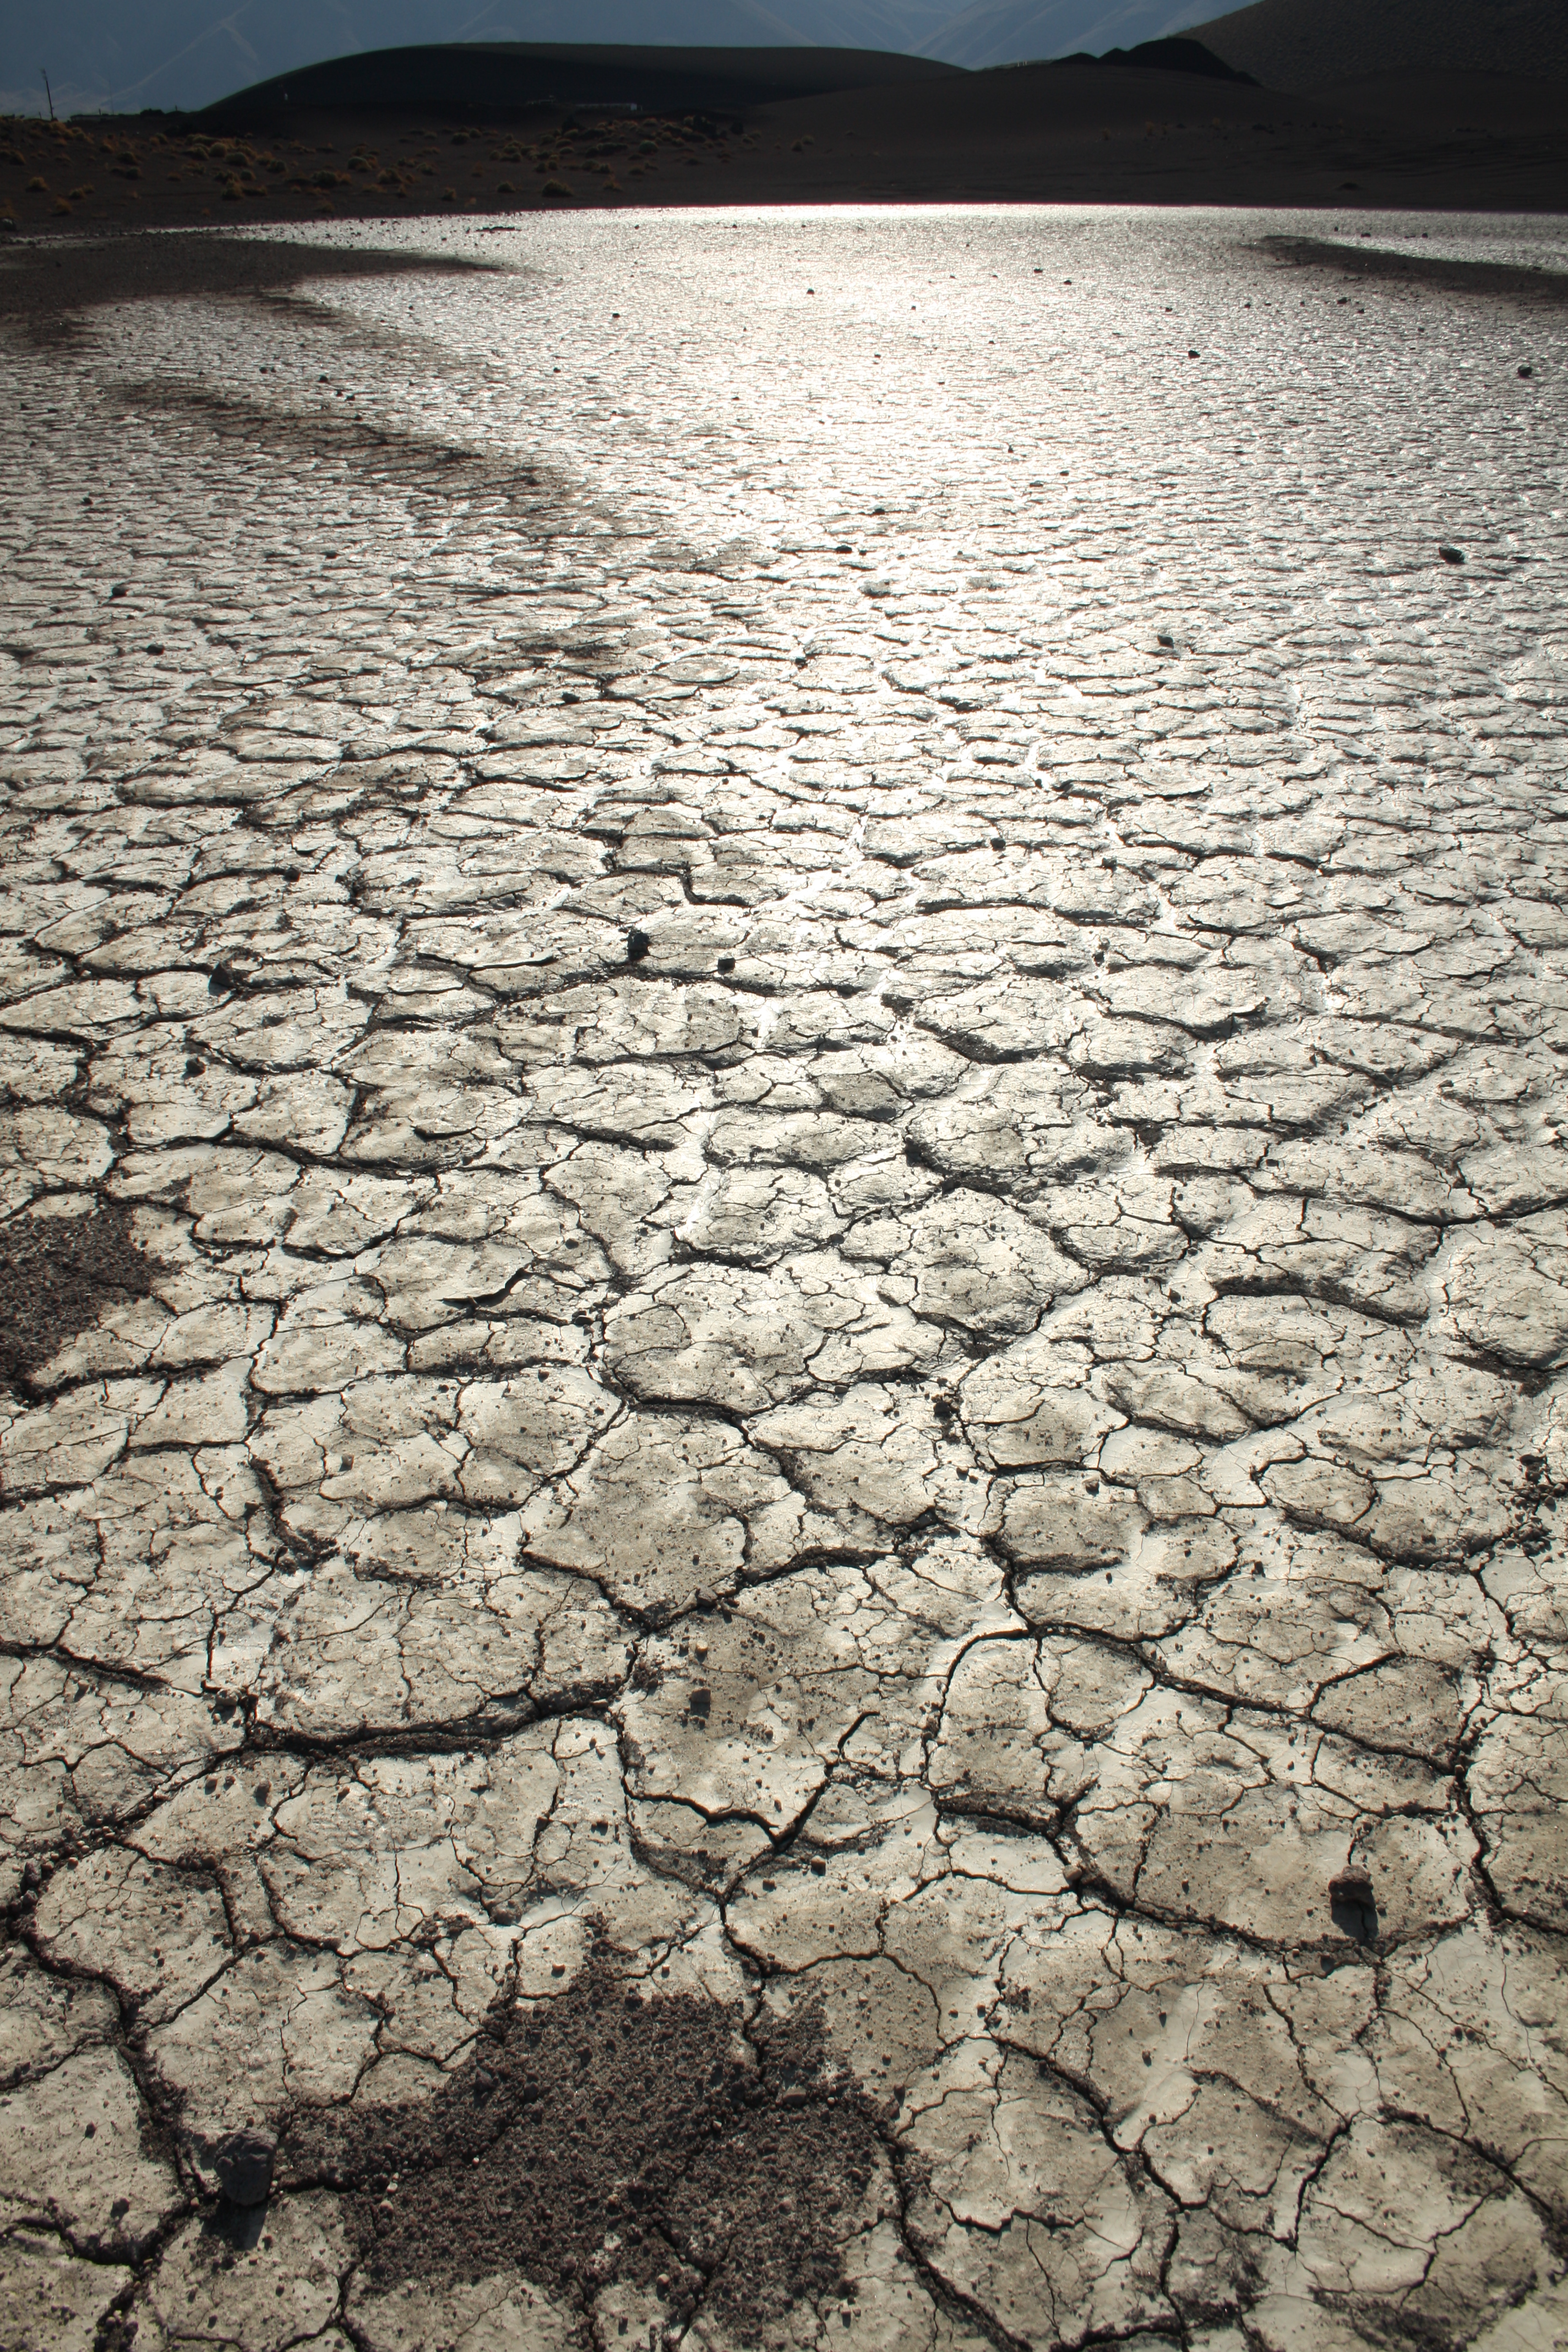 Cracked riverbed in the desert. by muttiniraq on DeviantArt